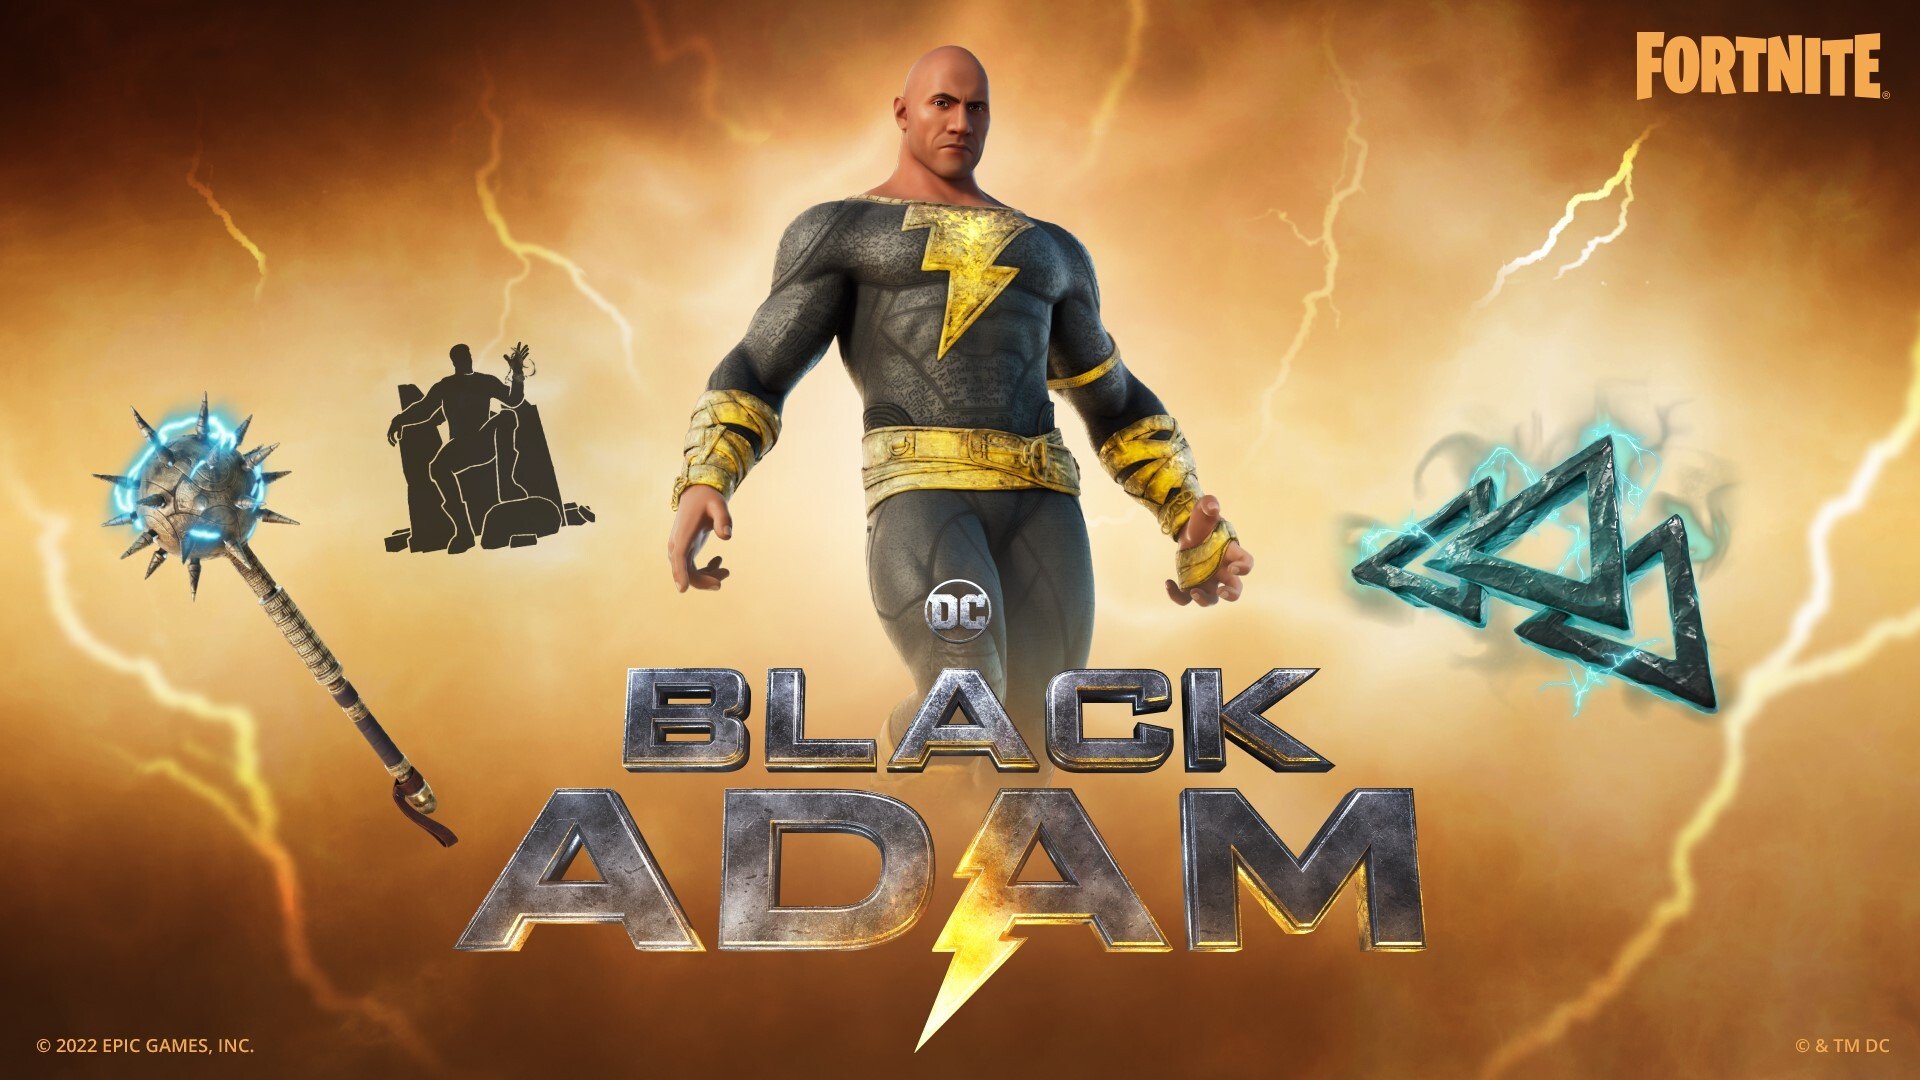 Black Adam Brings The Rock To FortniteAgain